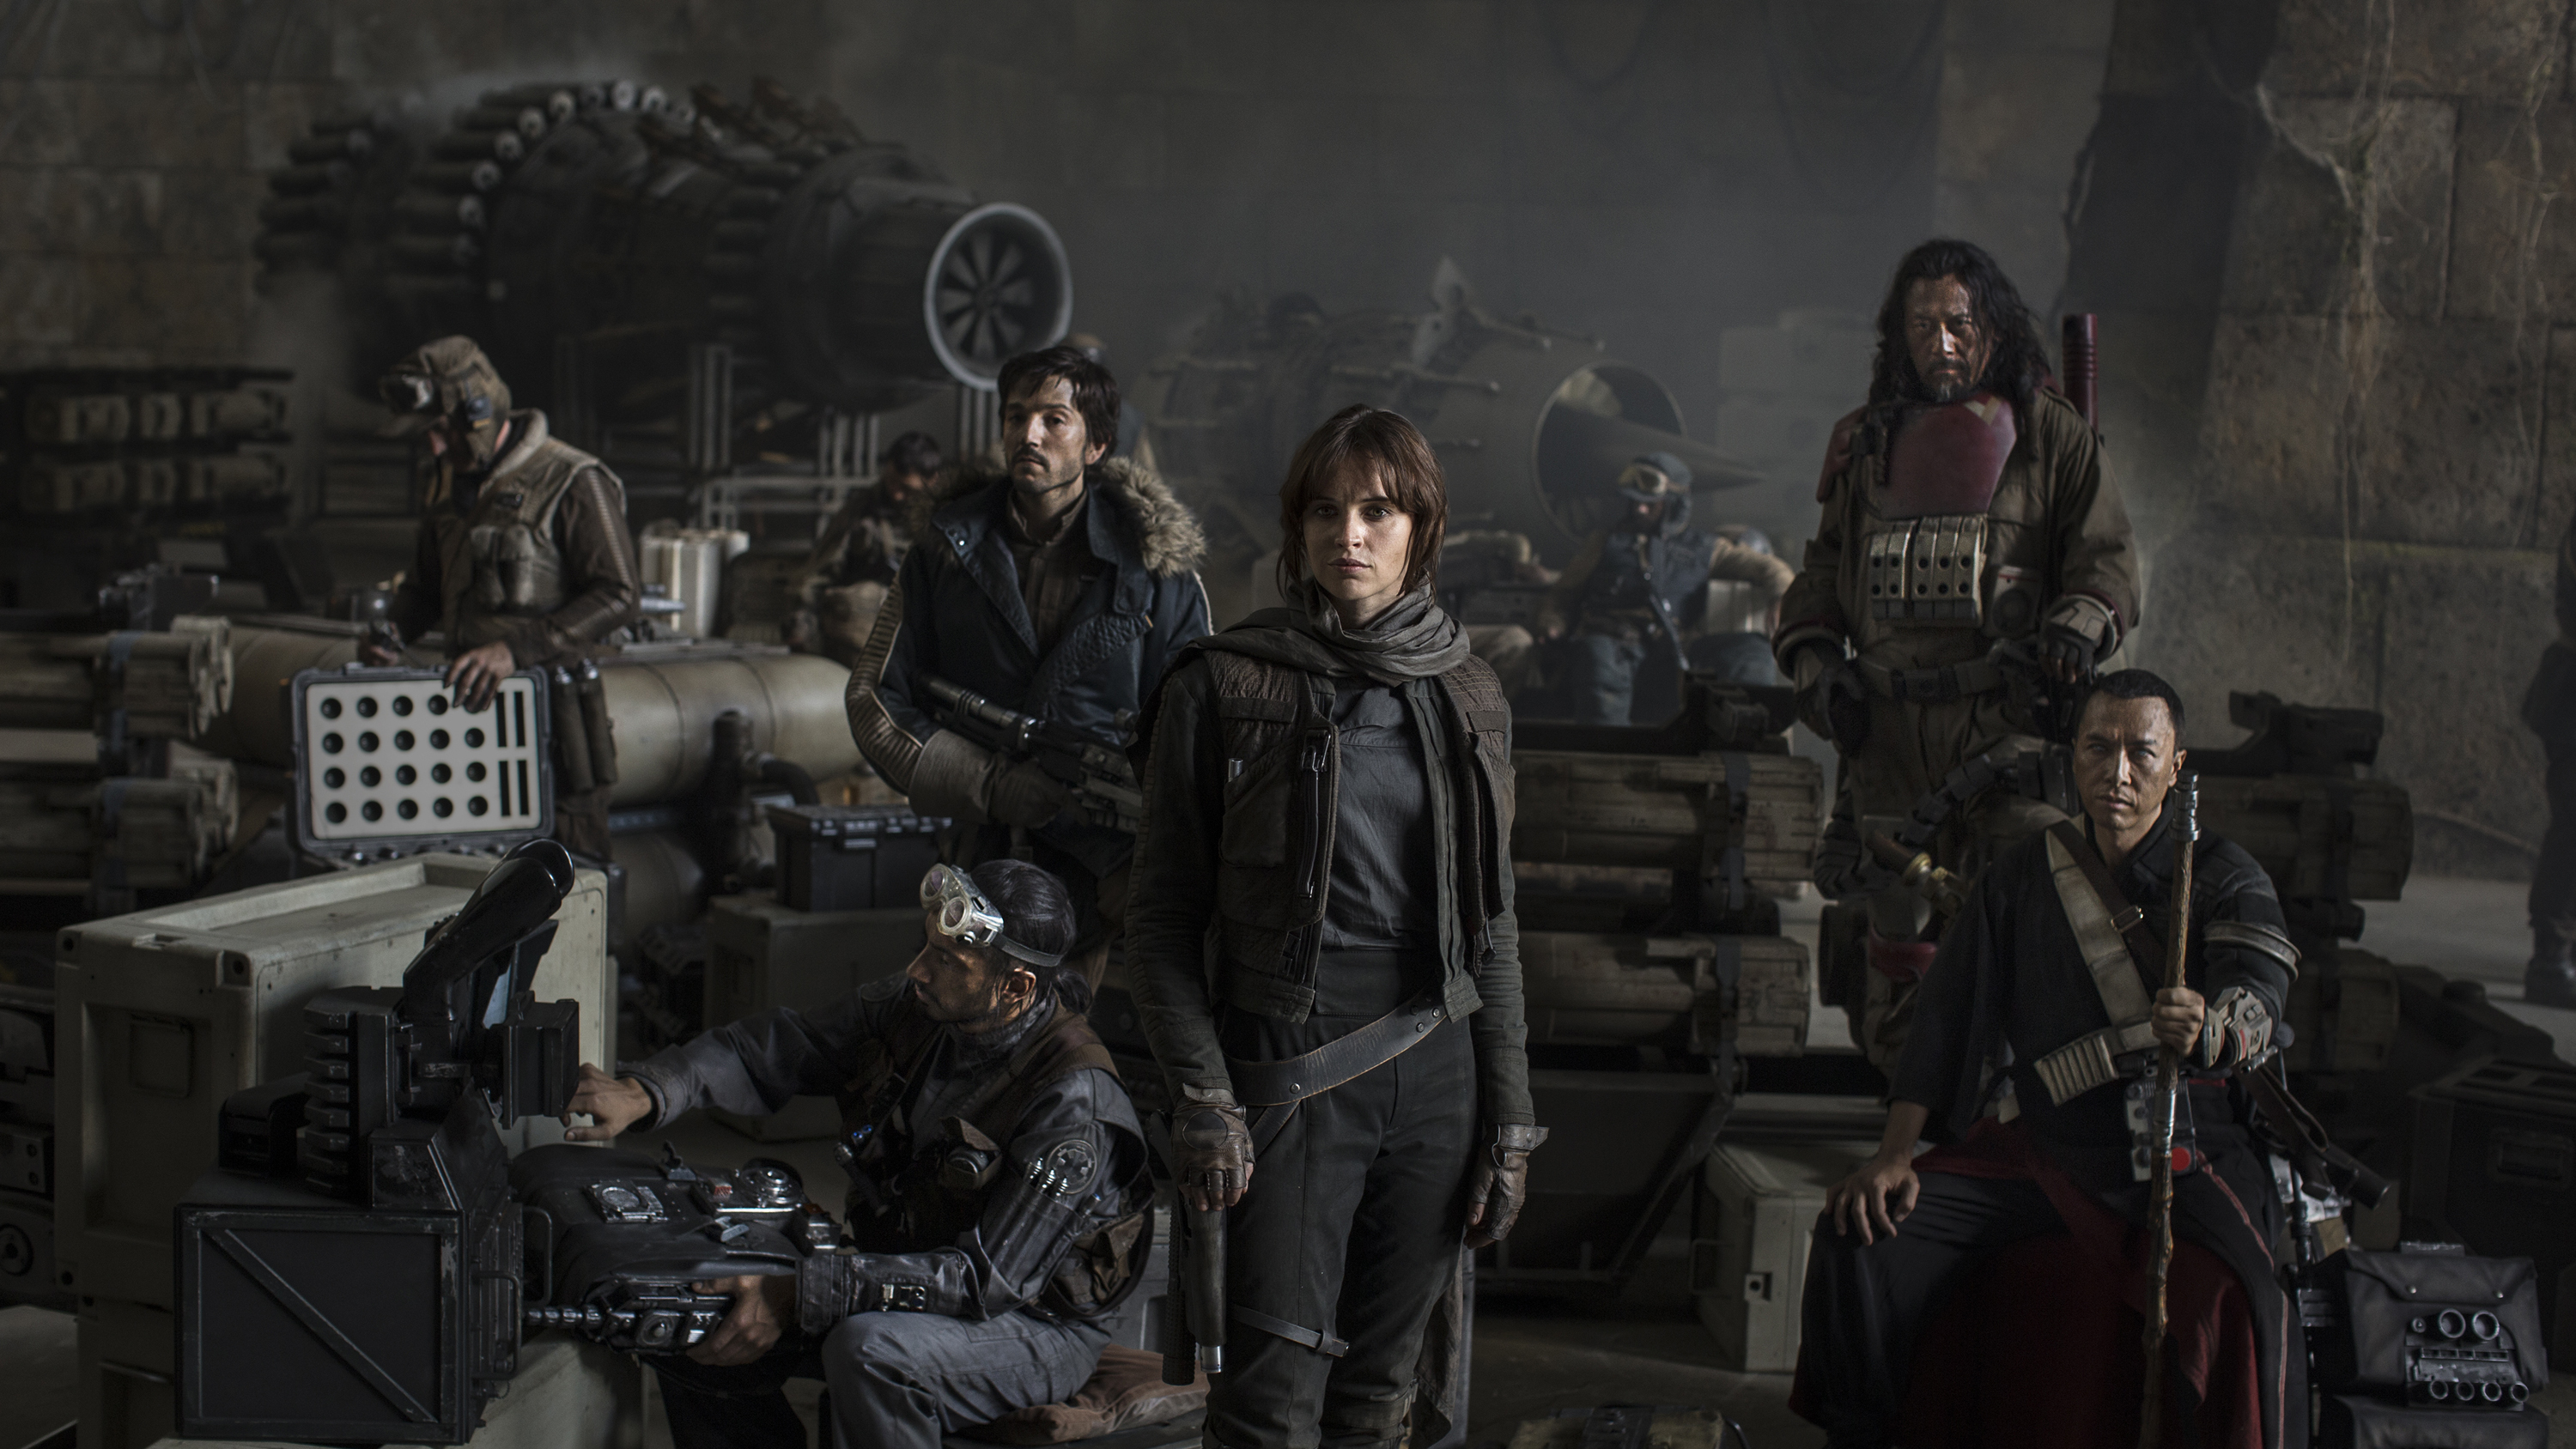 Eerste foto 'Star Wars: Rogue One' onthult hoofdpersonen